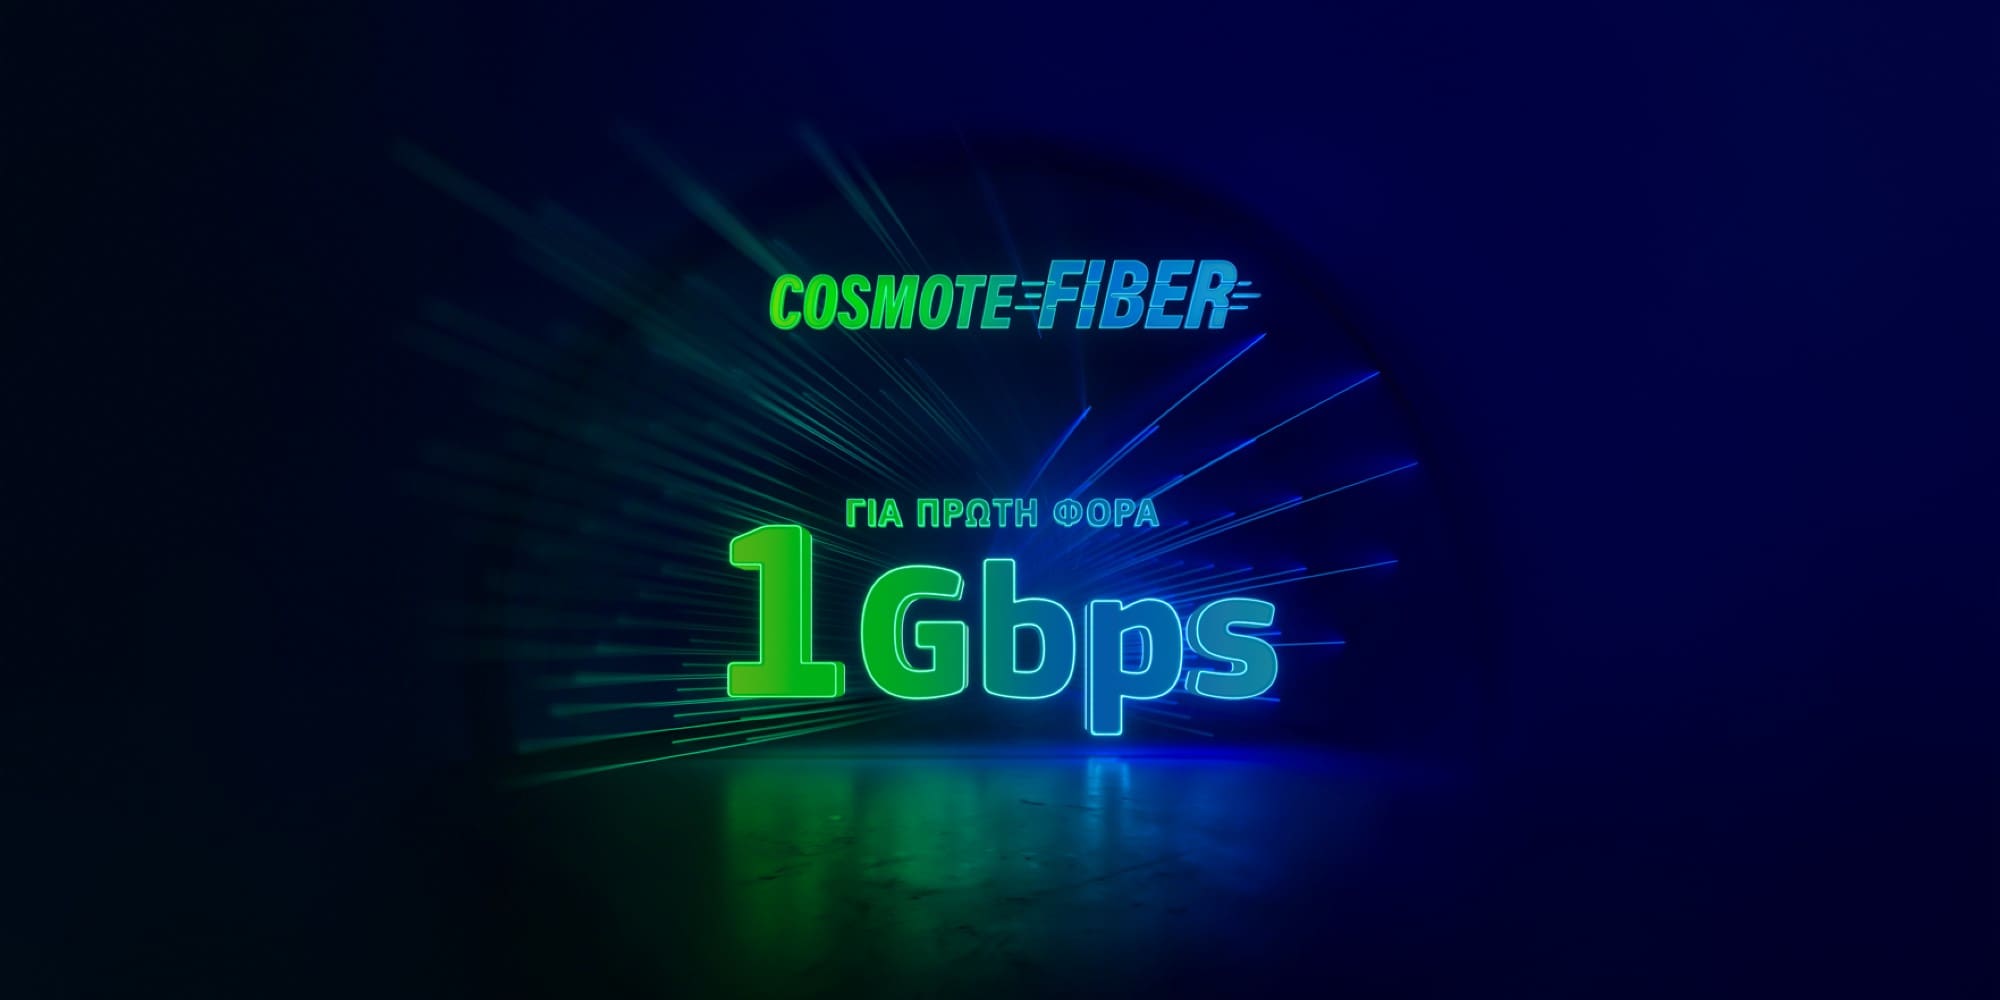 Για πρώτη φορά ασύλληπτες ταχύτητες 1Gbps στο δίκτυο Cosmote Fiber